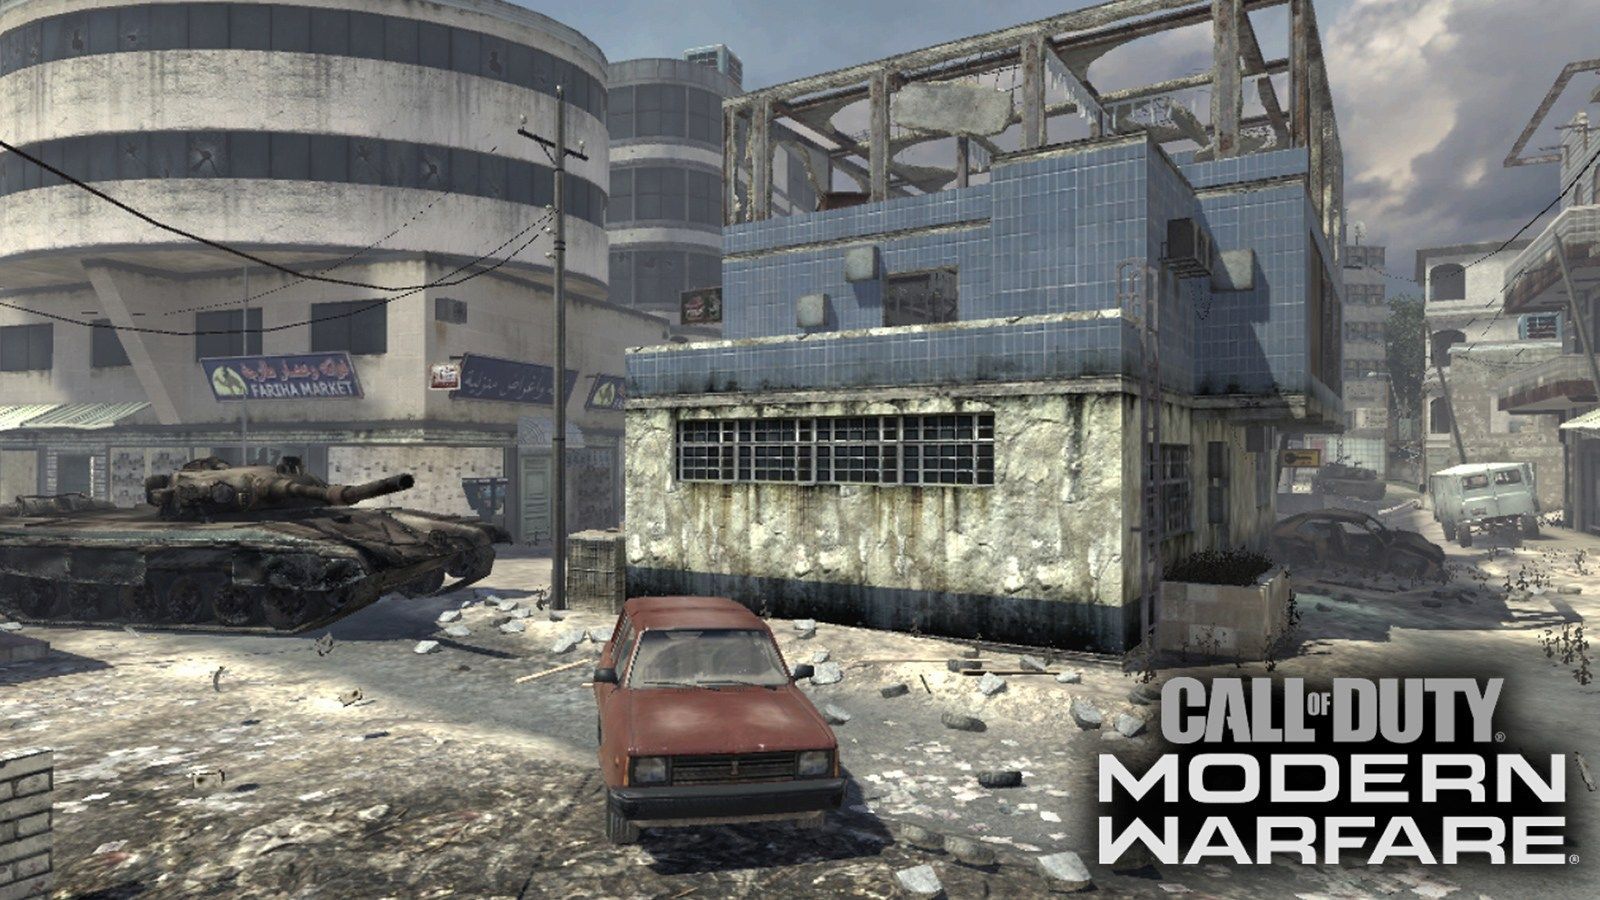 La carte Invasion de MW2 a été découverte sur Modern Warfare - Dexerto.fr